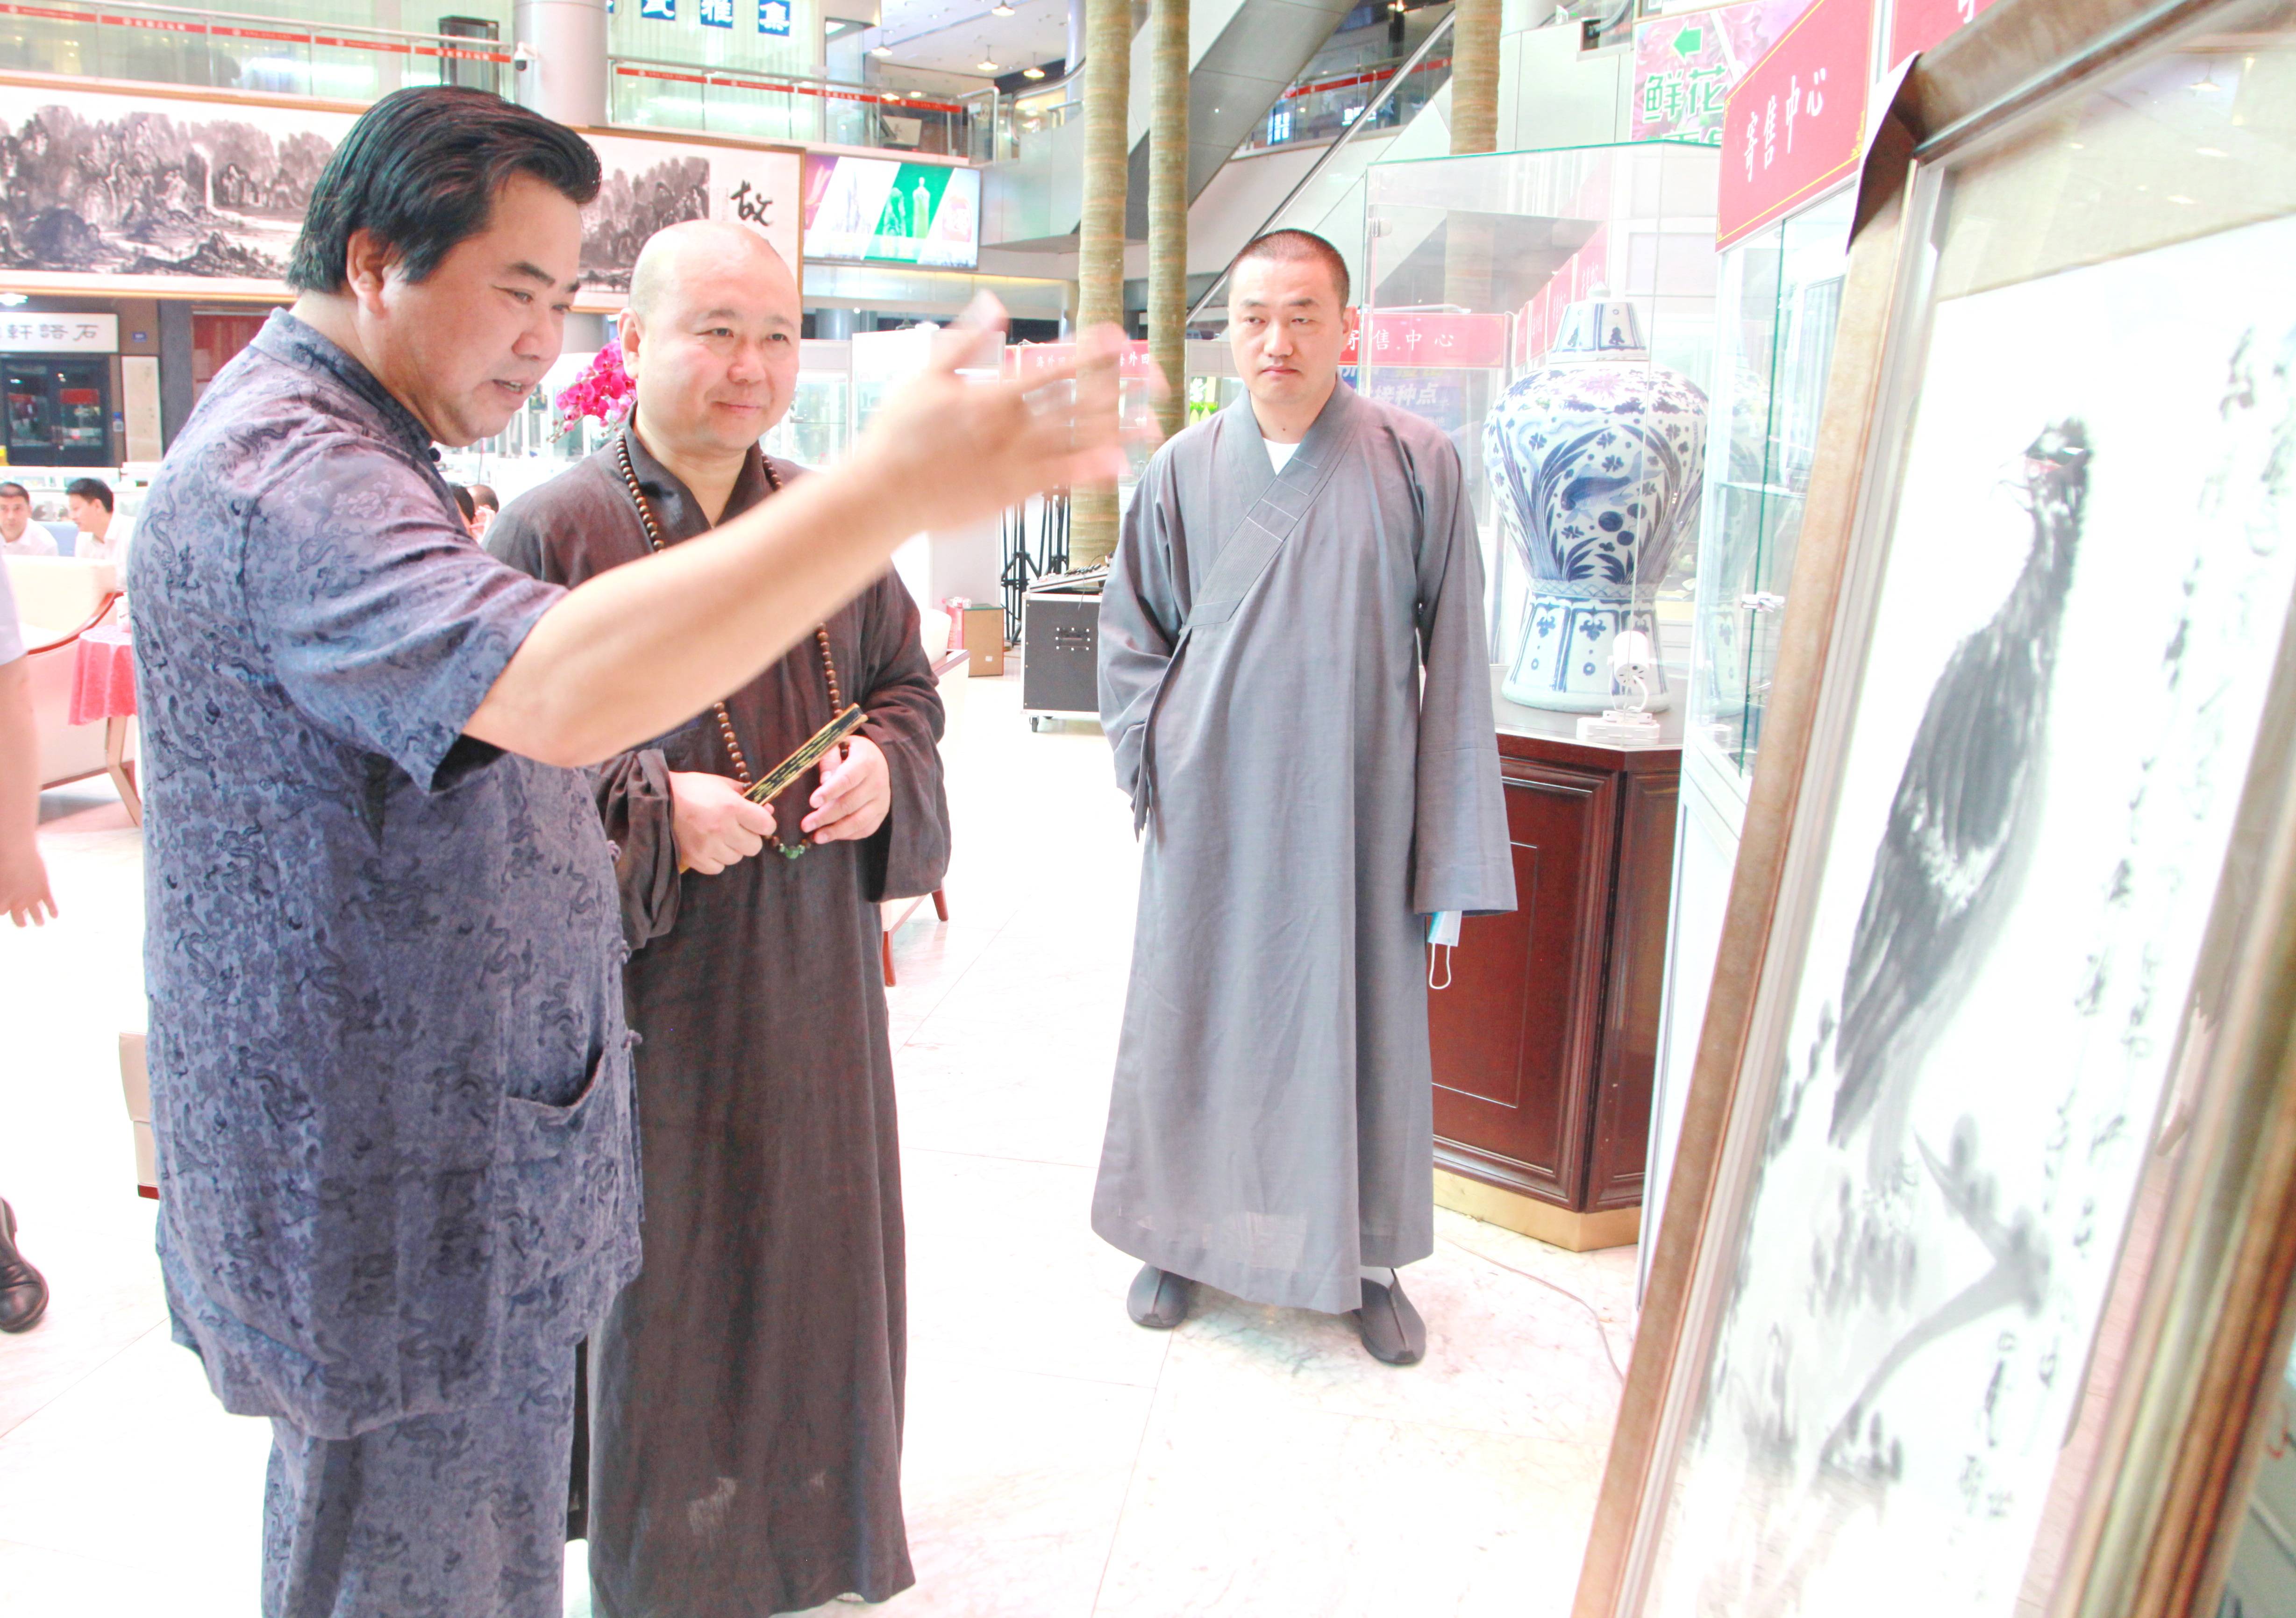 上海玉佛寺法师名录图片